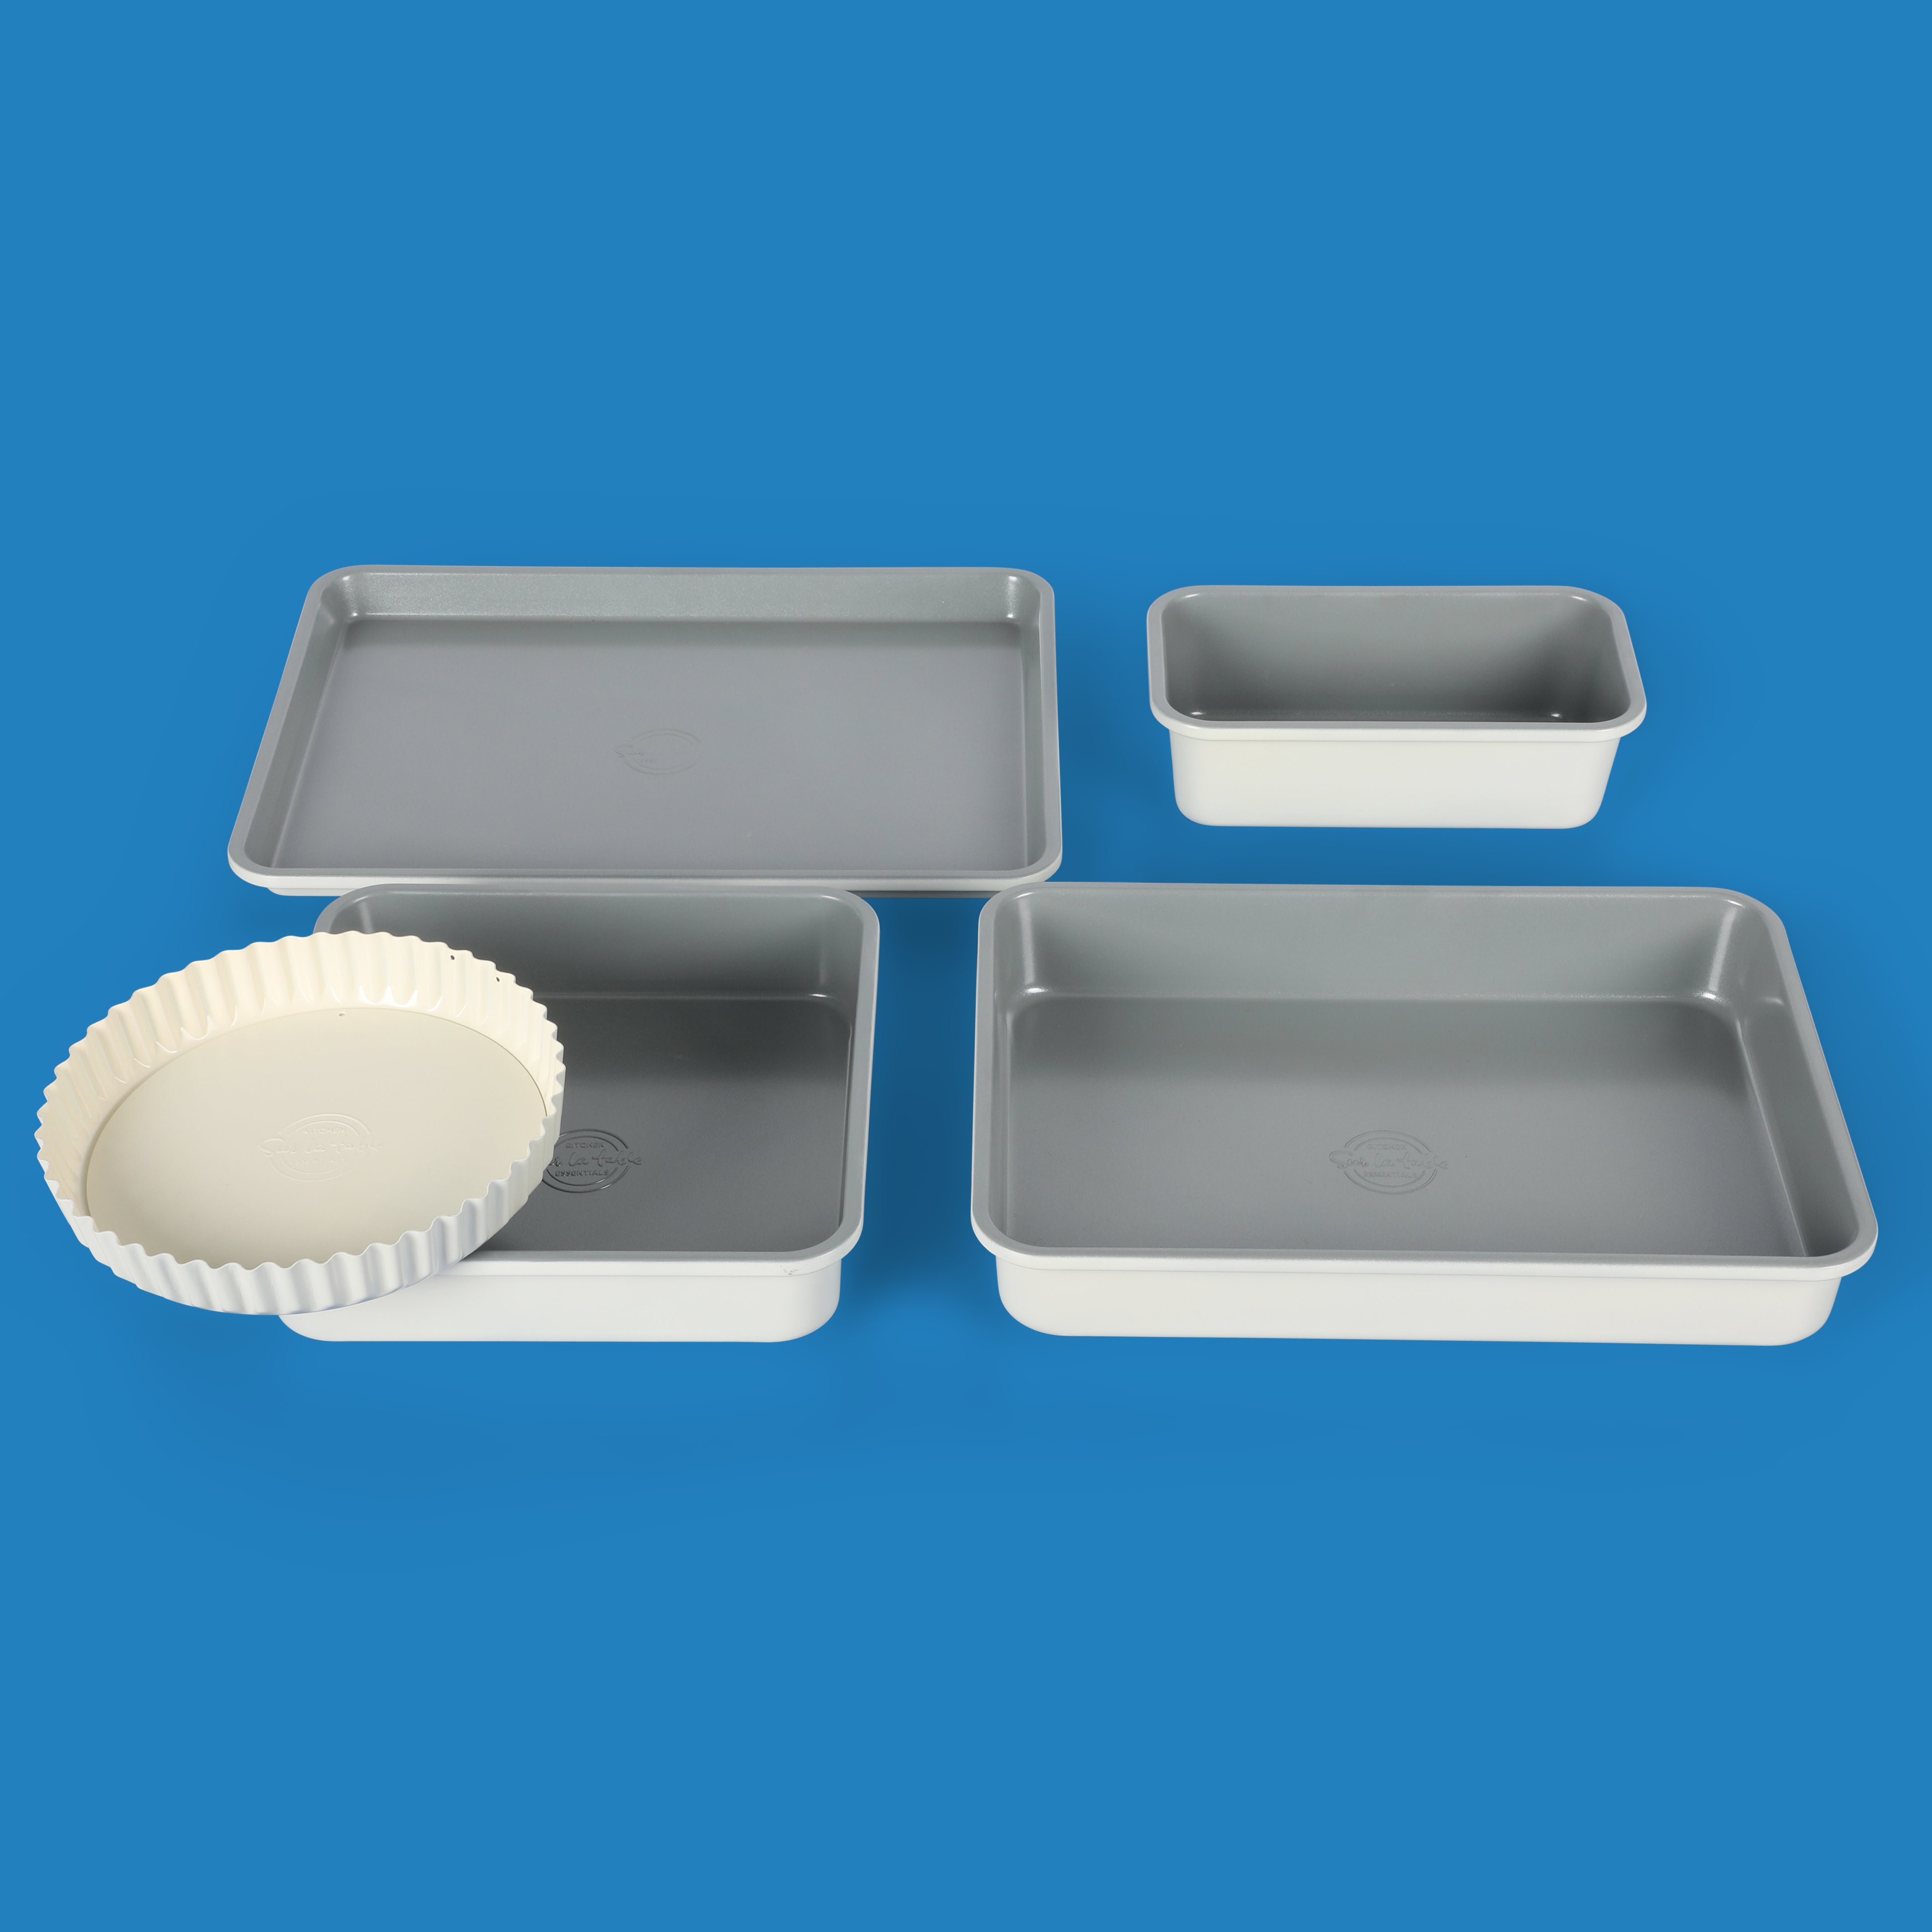 Sur La Table Kitchen Essentials Carbon Steel Bakeware Set w/ Premium P